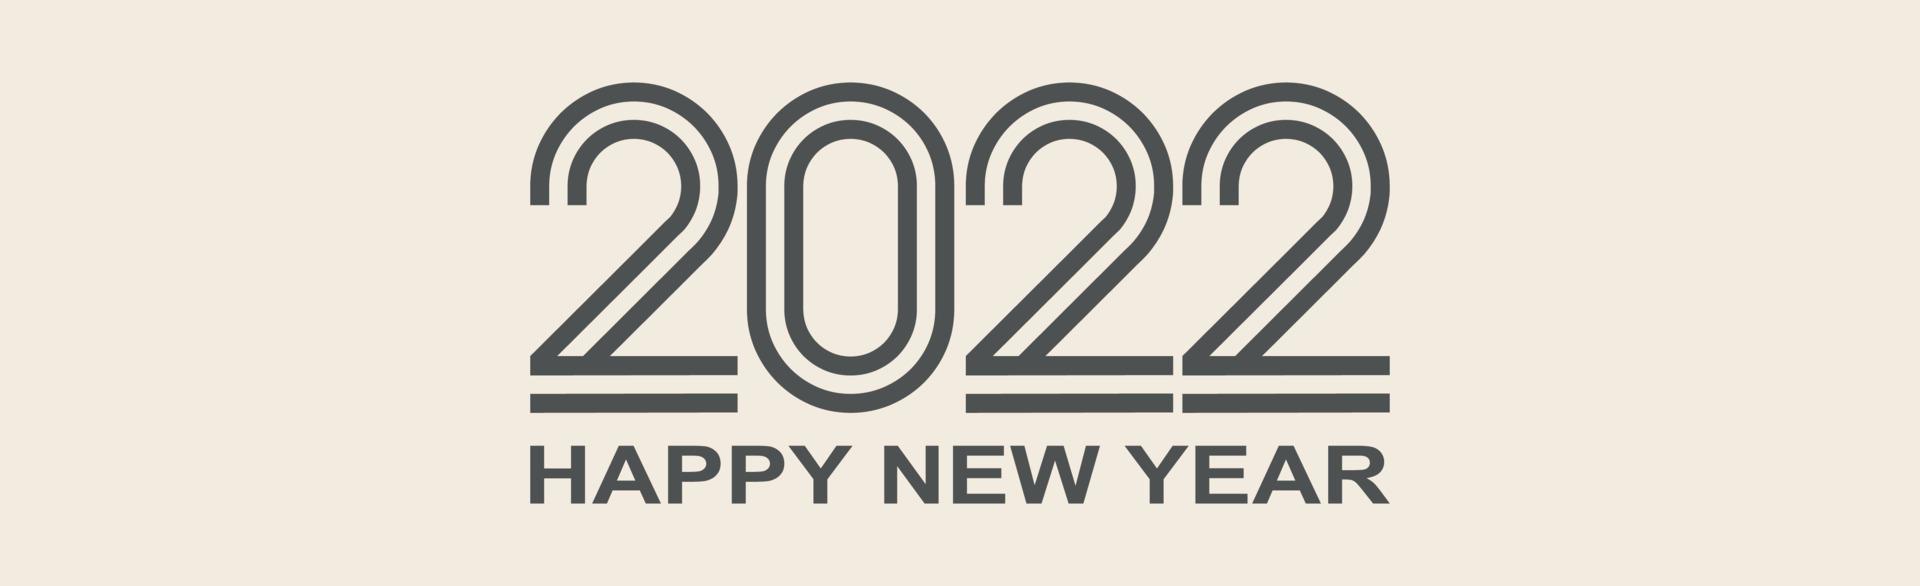 gott nytt år 2022, jullov, webbbaner - vektor